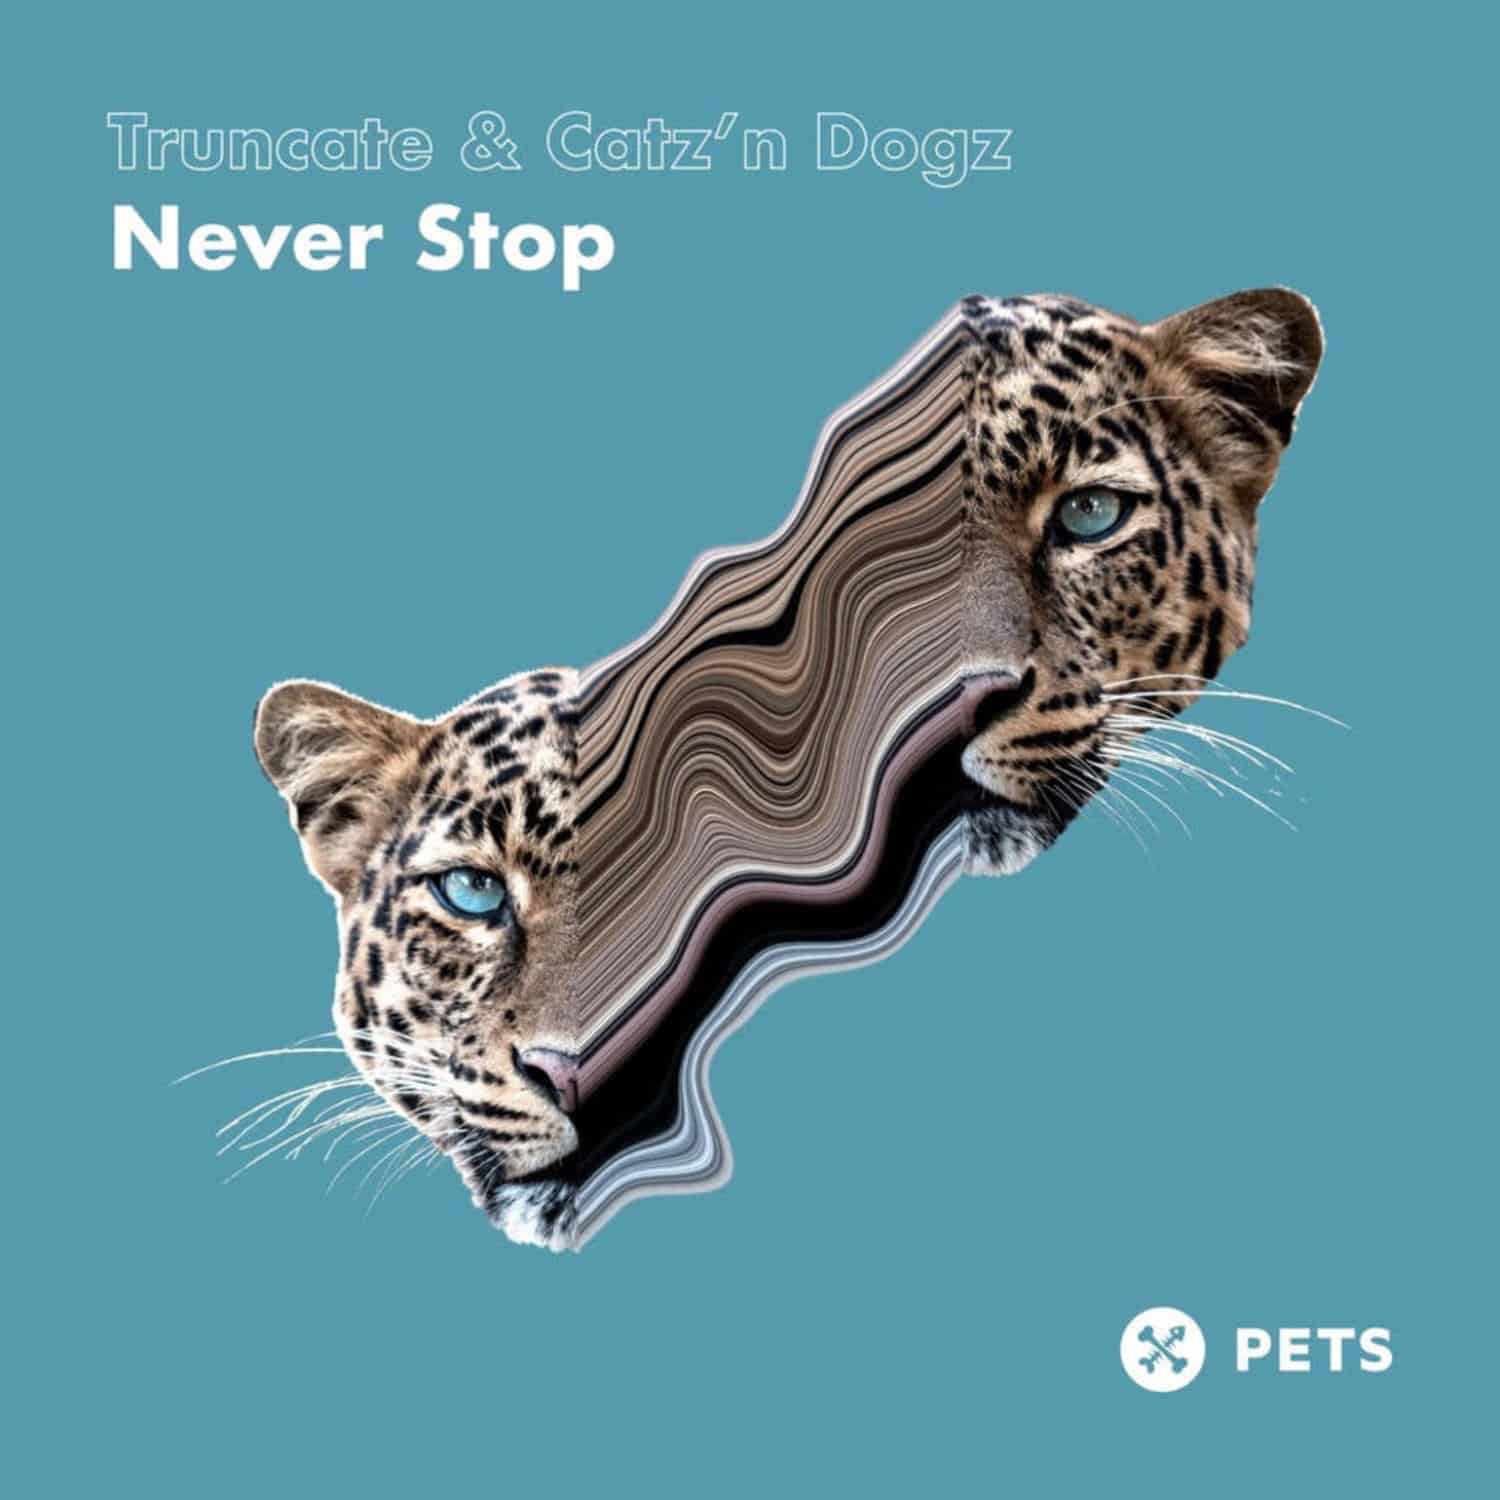 Truncate & Catz n Dogz - NEVER STOP EP